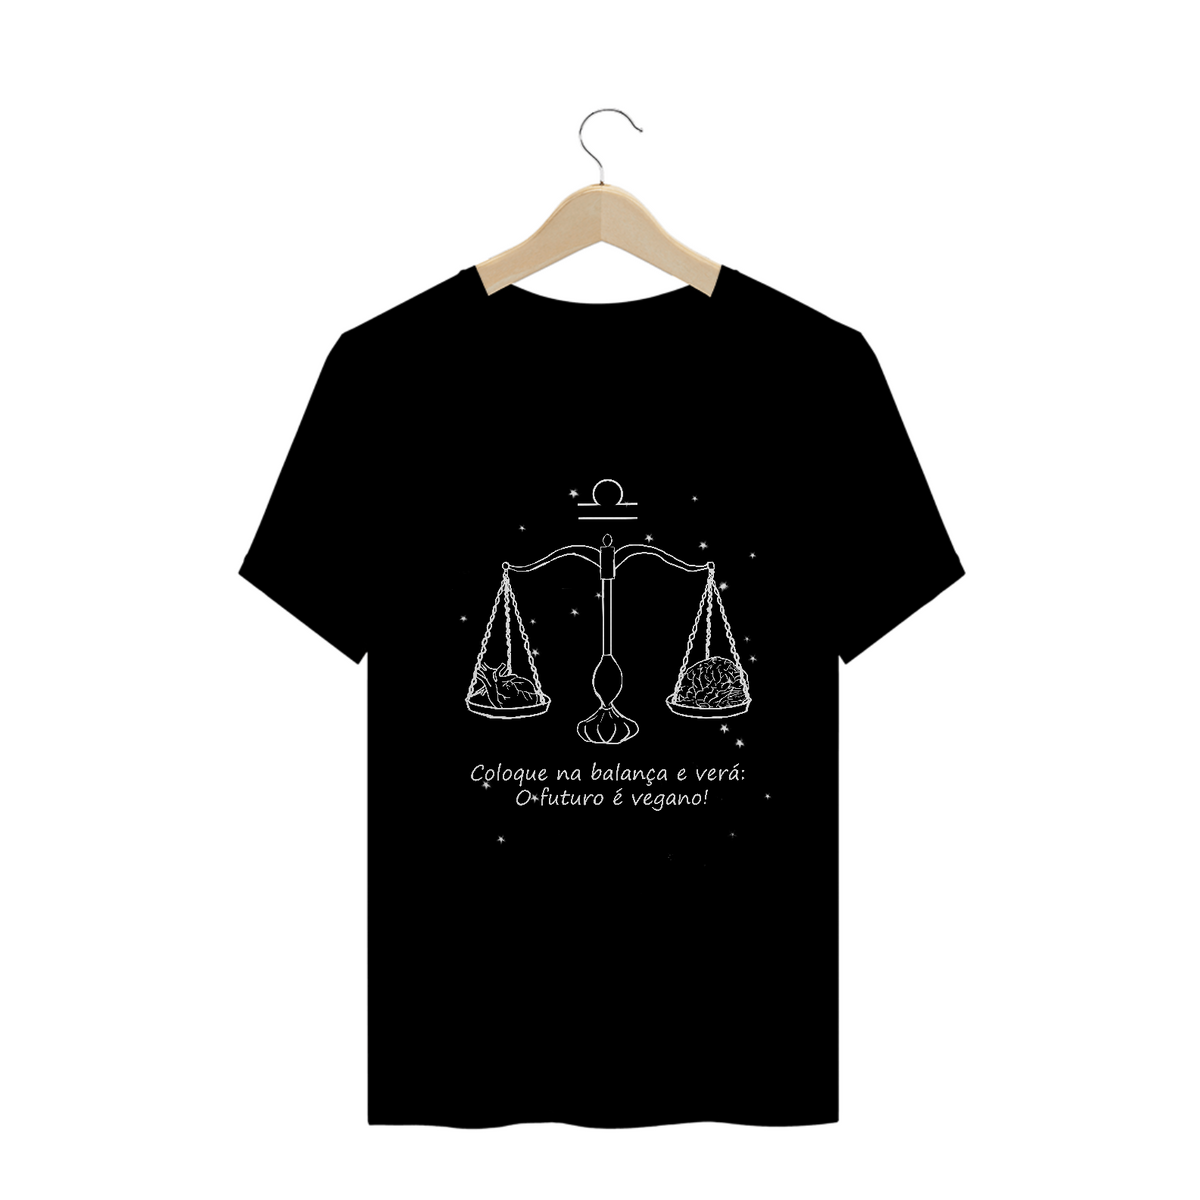 Nome do produto: Camiseta Unissex | Libra | Coloque na balança e verá: O futuro é vegano! | P&B